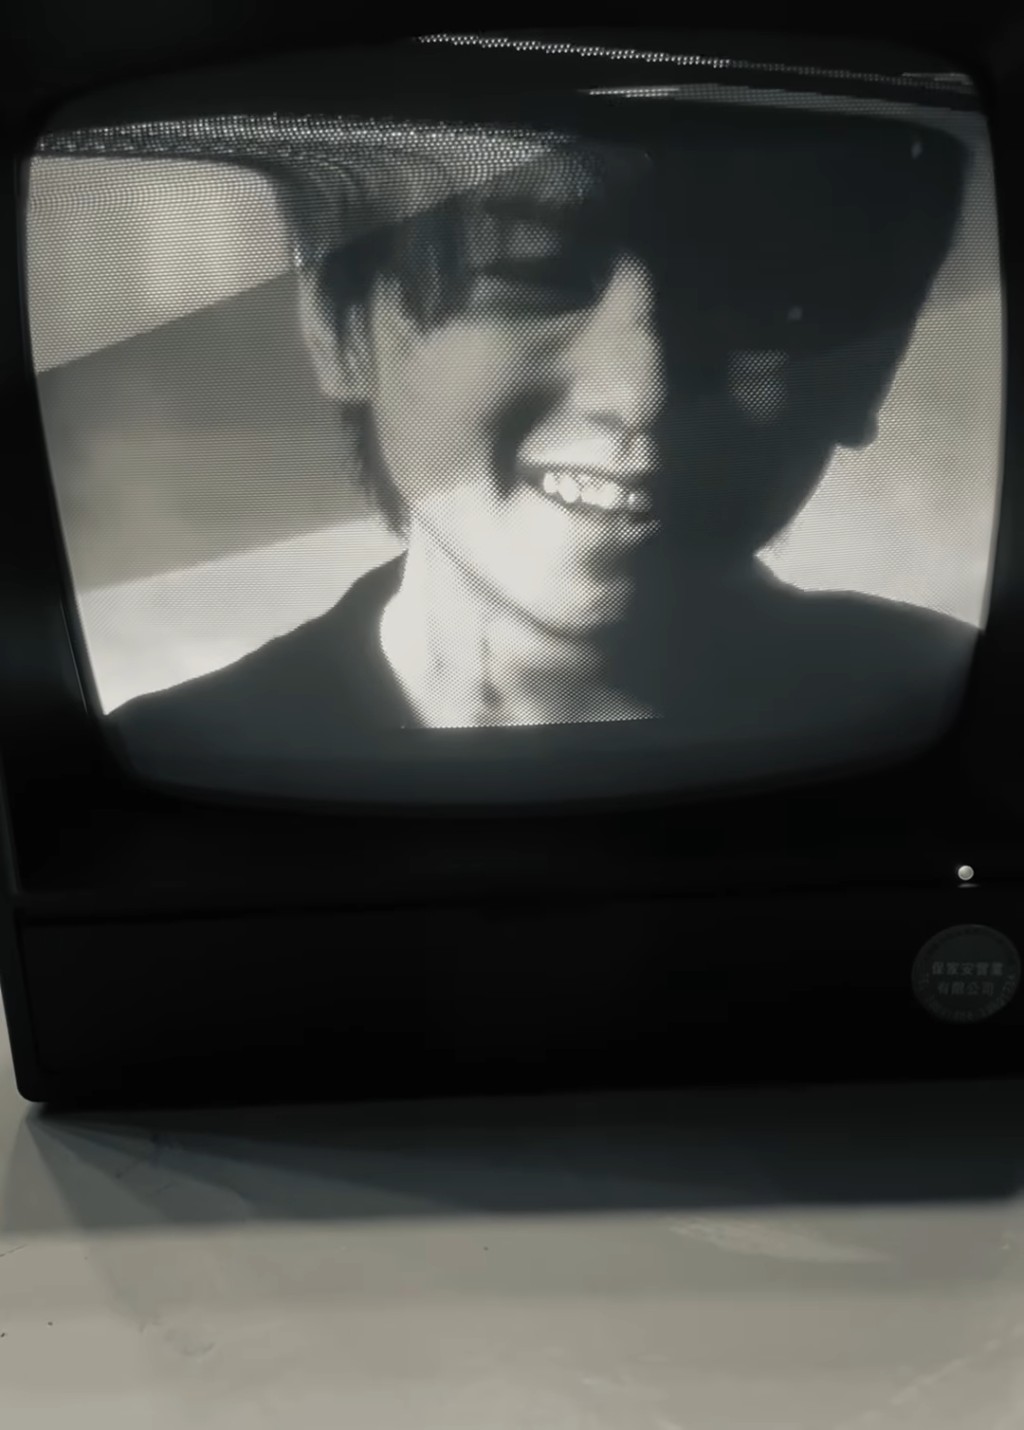 姜涛于社交网上载一段疑似新歌《Dummy》MV的花絮黑白短片。